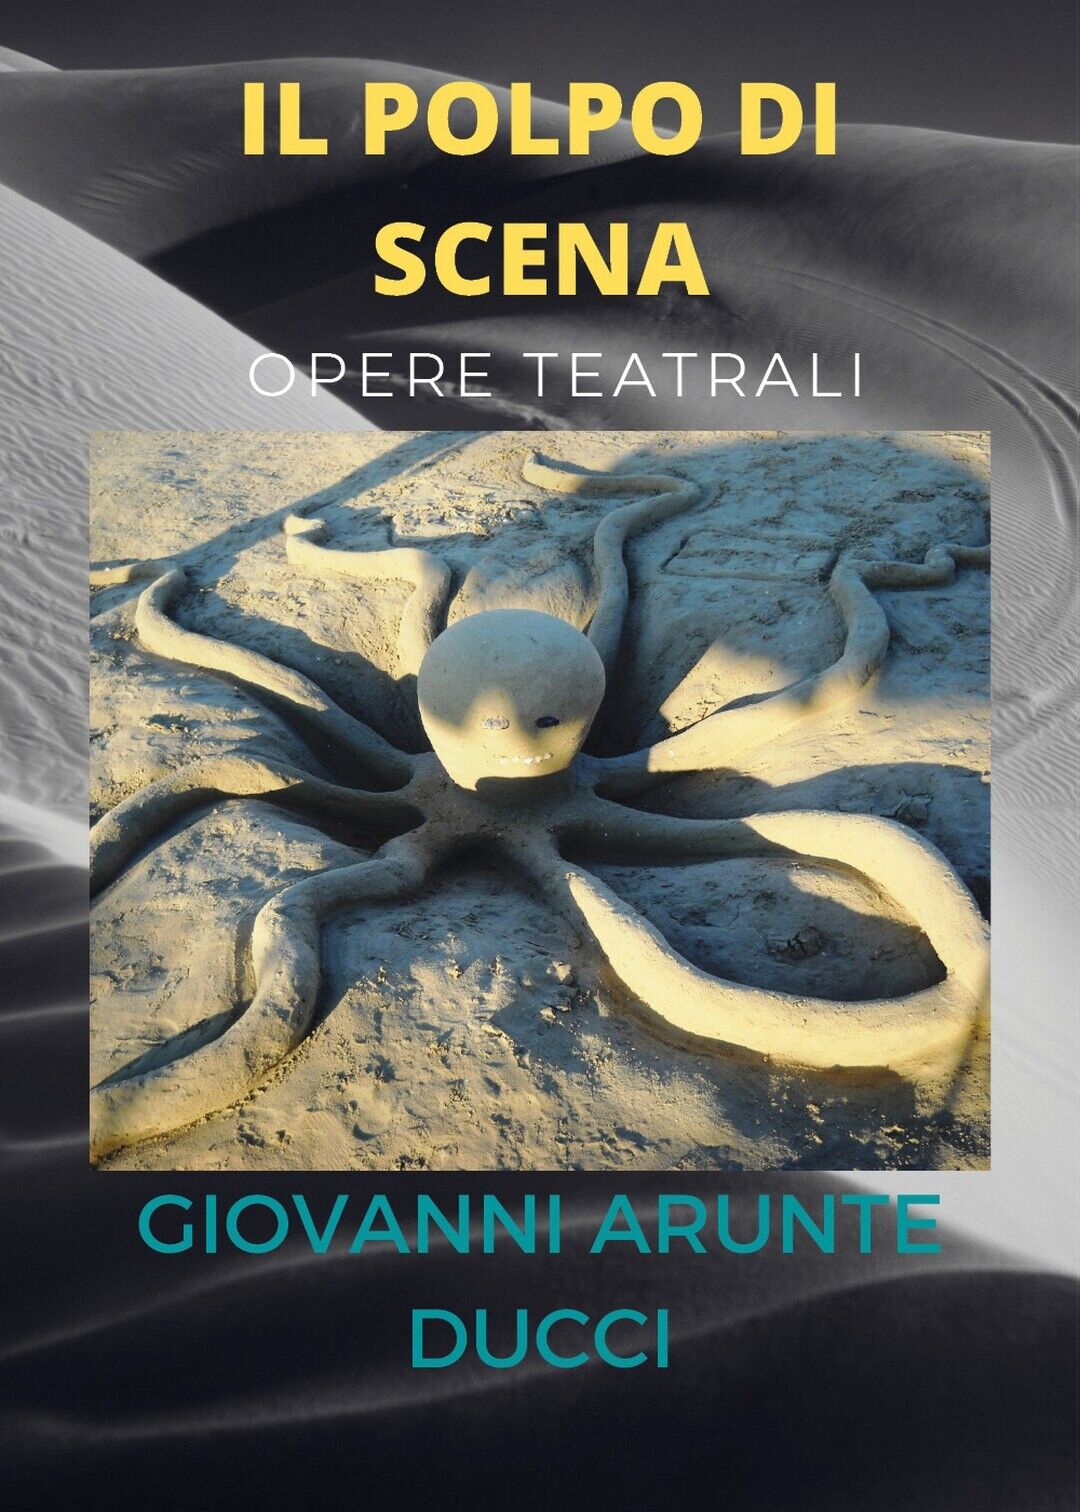 IL POLPO DI SCENA - opere teatrali, Giovanni Arunte Ducci,  2021,  Youcanprint